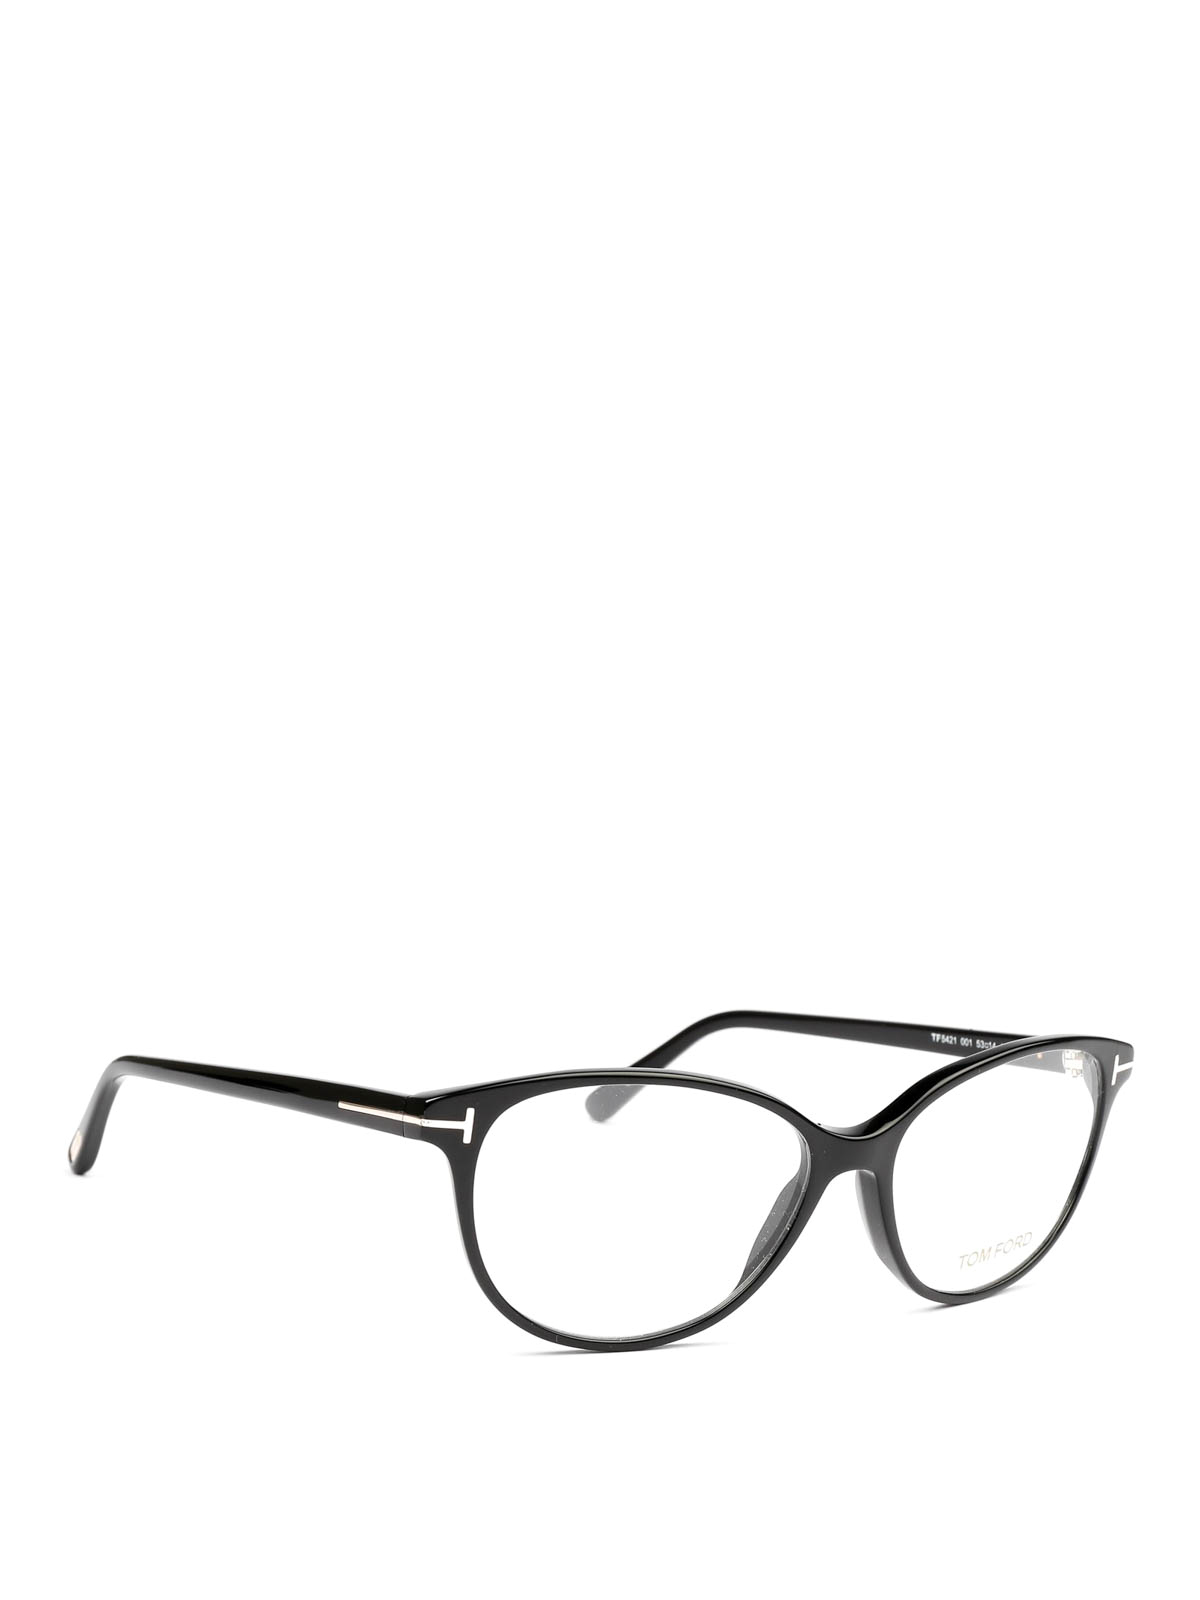 Glasses Tom Ford - Black cat-eye optical glasses - FT5421001 